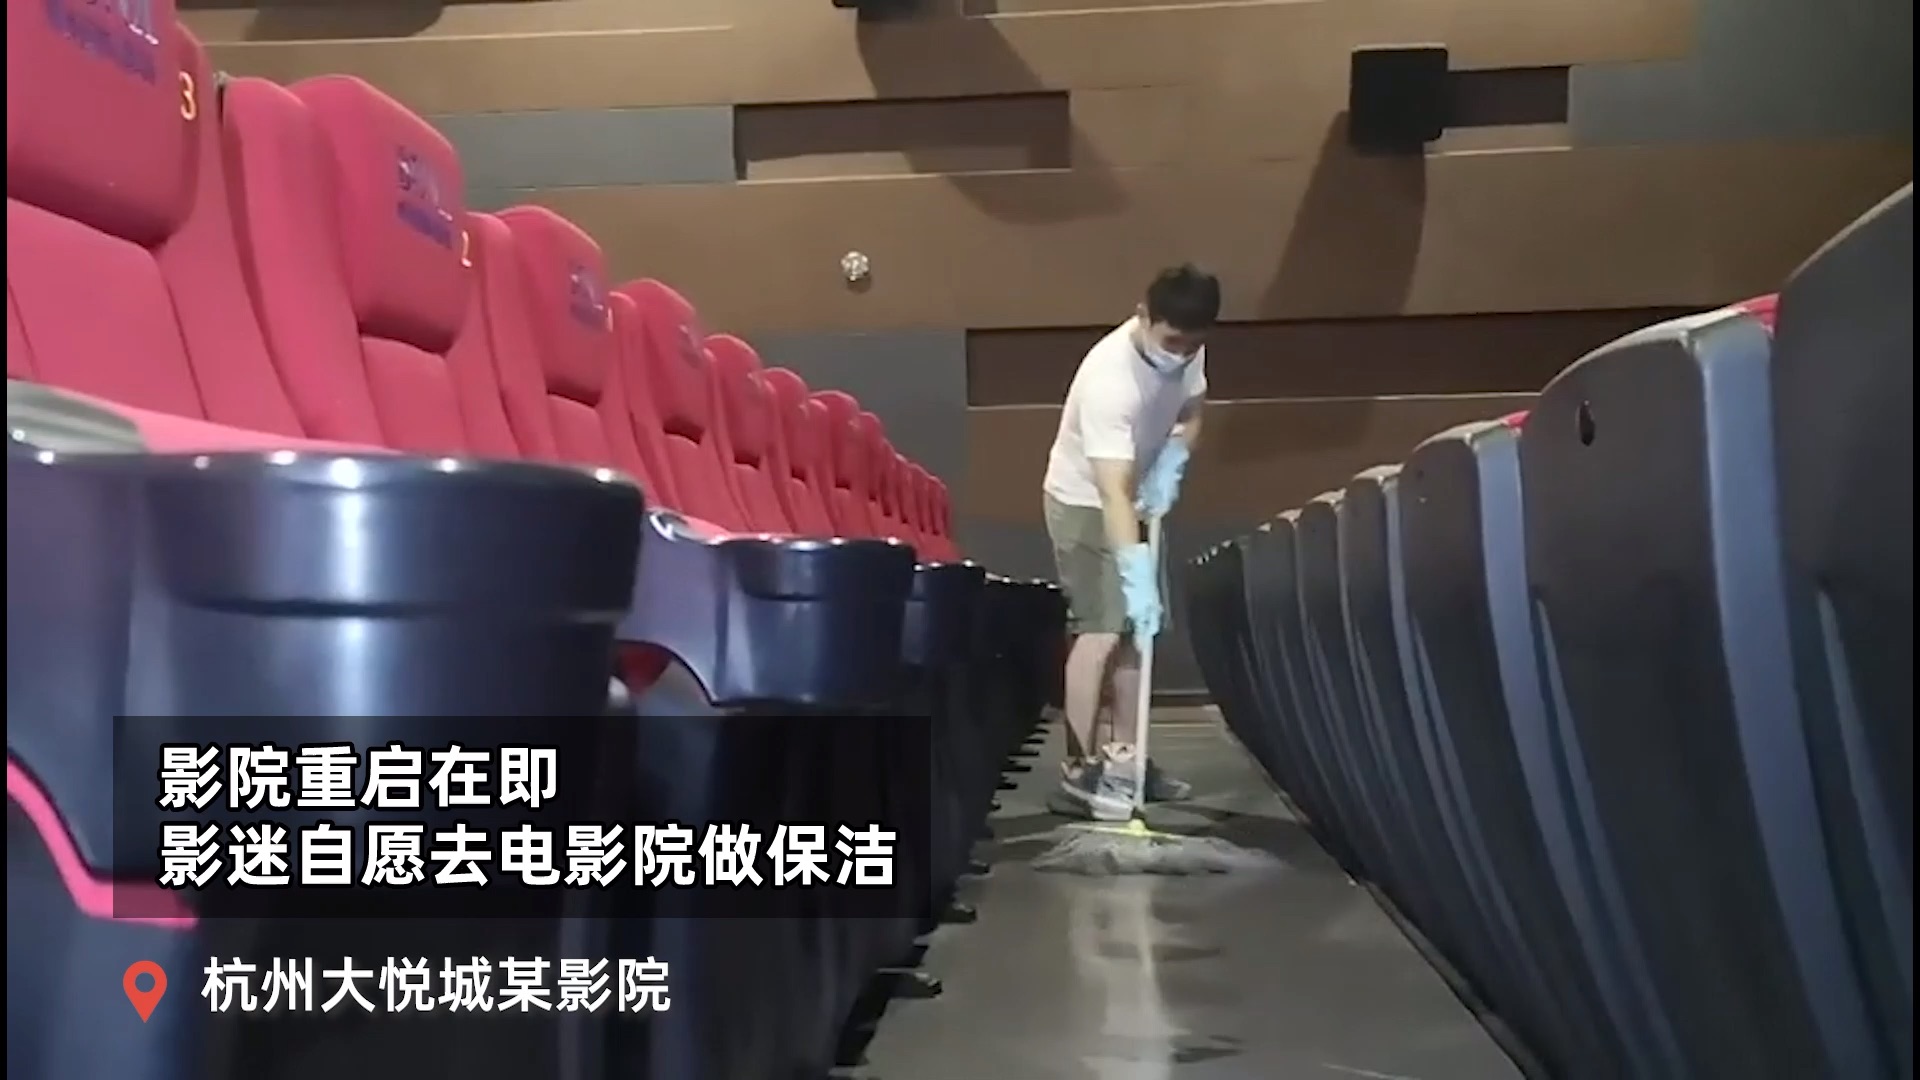 久违了，大荧幕！ #杭州影迷自发去影院做保洁#